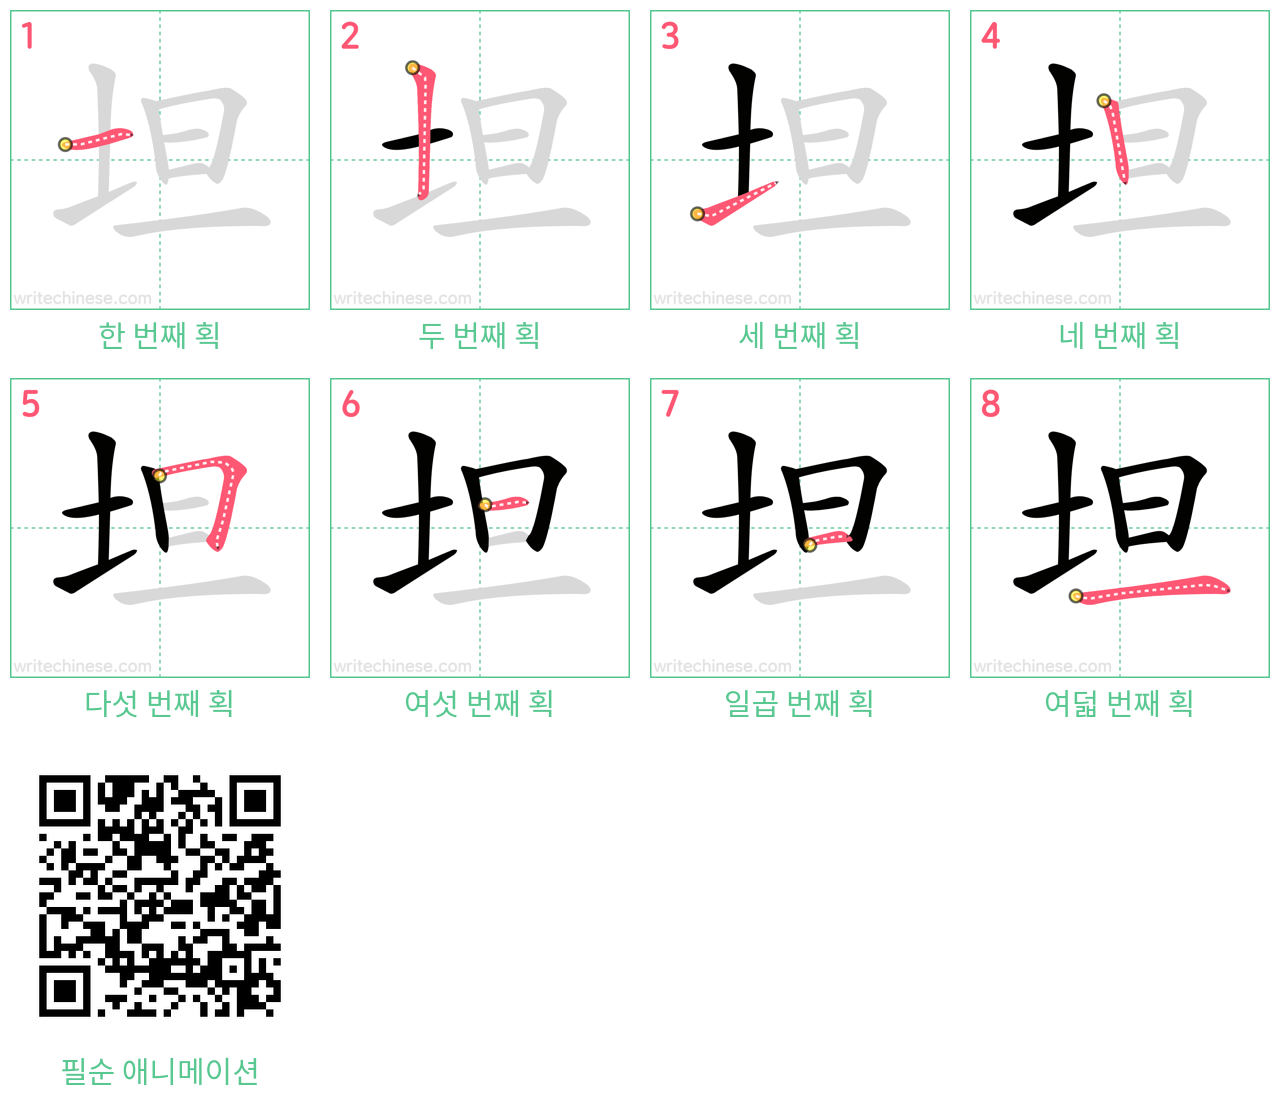 坦 step-by-step stroke order diagrams